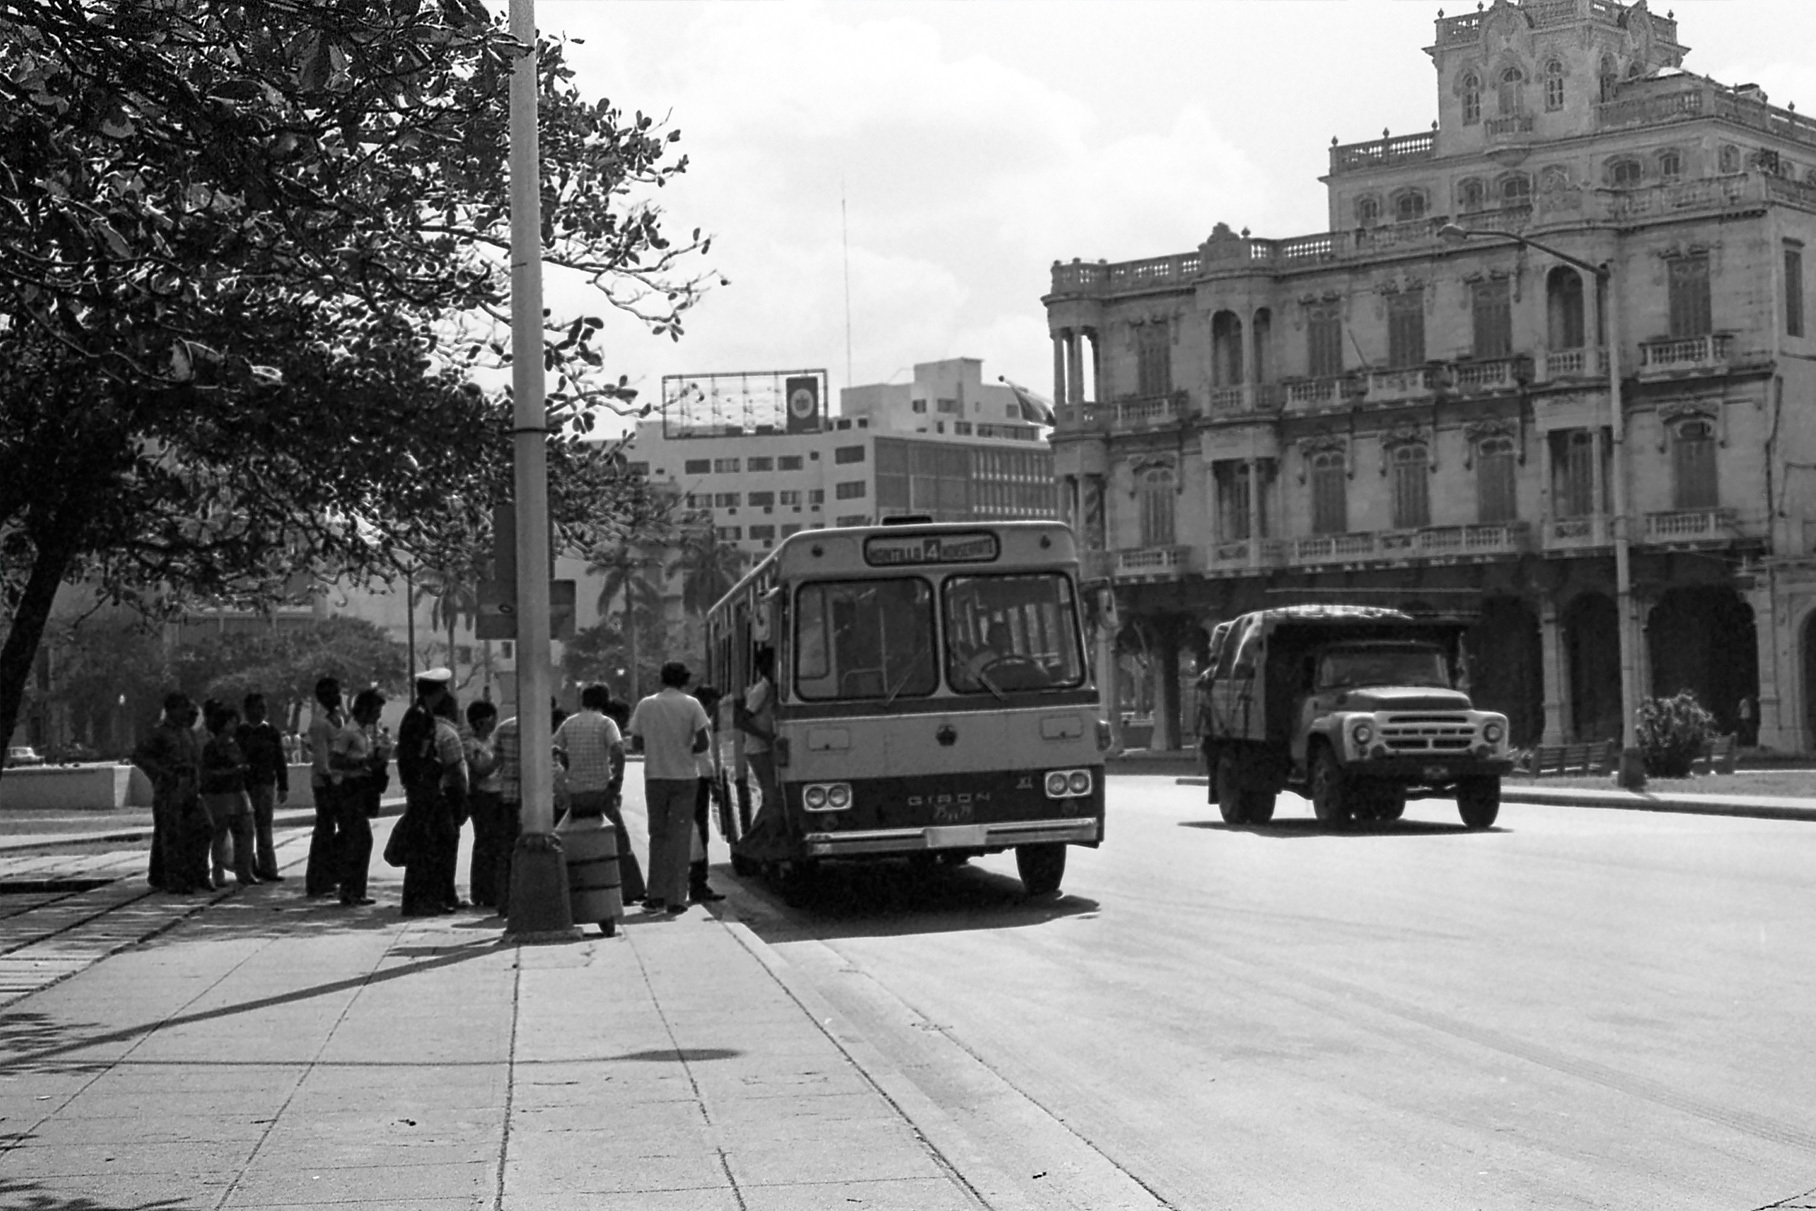 На фото Куба в 1971 году. Велика вероятность, что эти же машины вы встретите на улице и сегодня